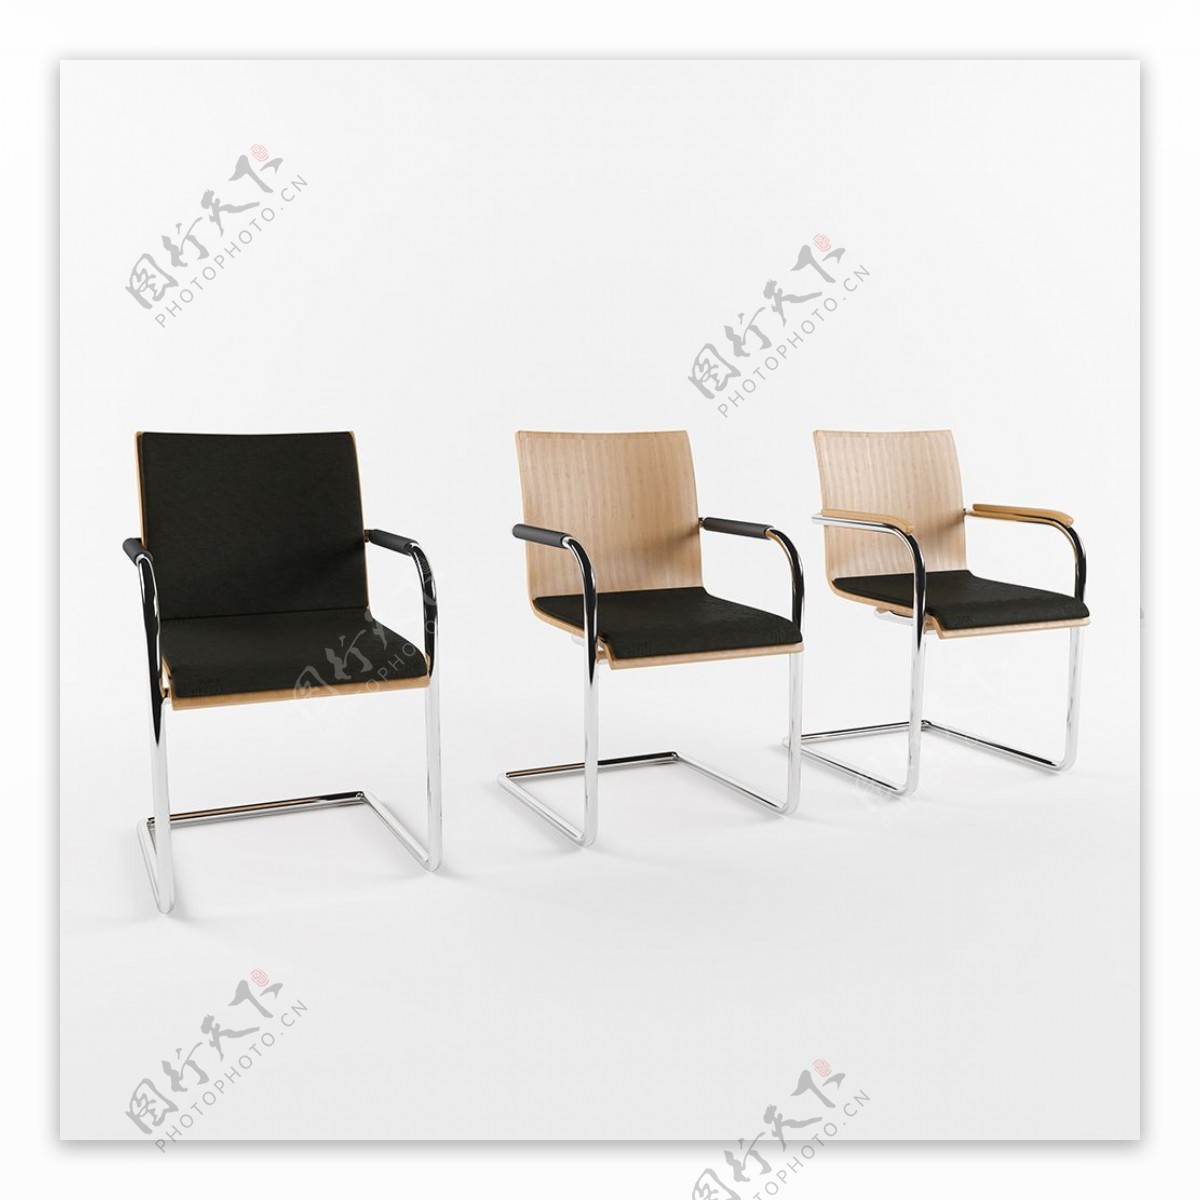 创意休闲简约座椅3d模型